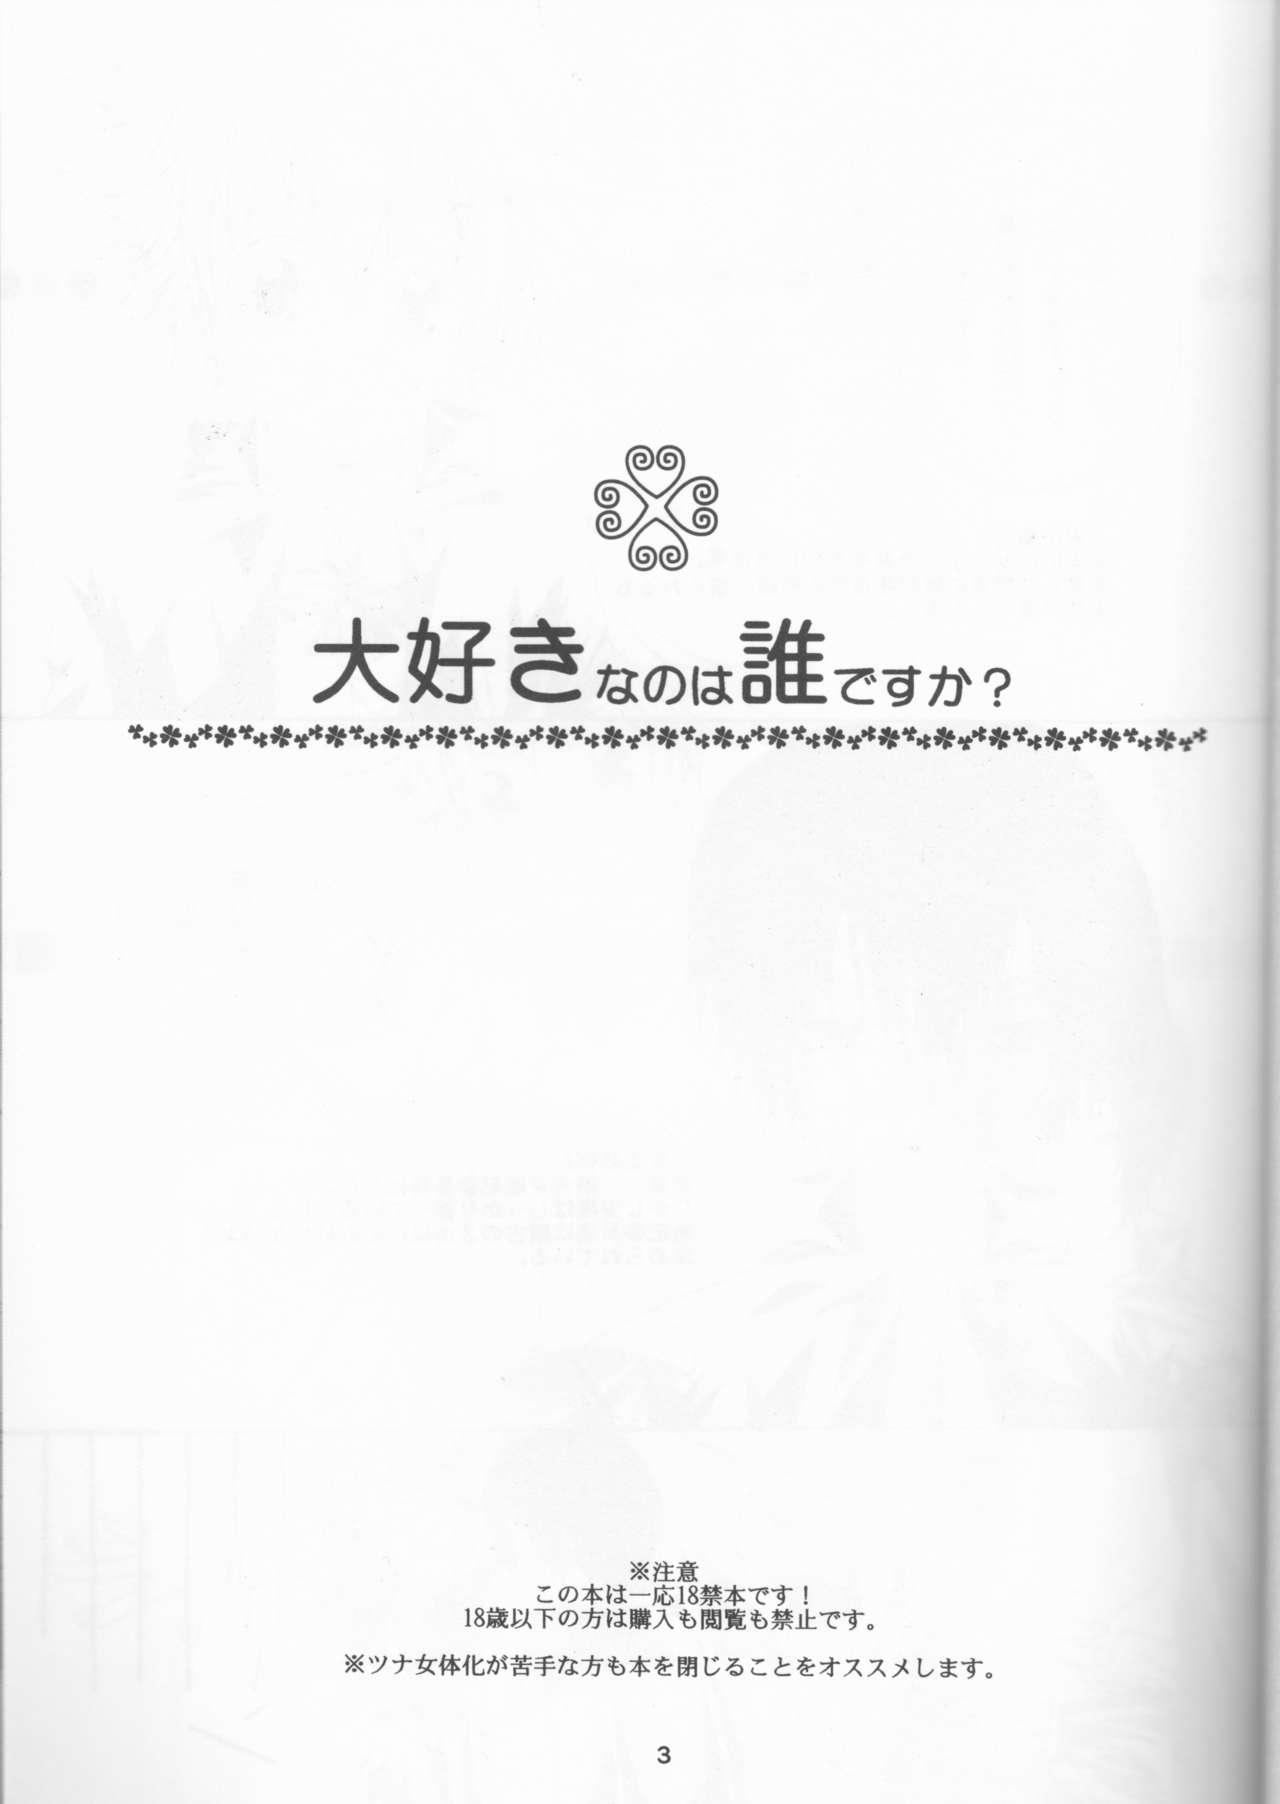 Cream Pie Daisukina no wa daredesu ka? - Katekyo hitman reborn Gordinha - Page 3